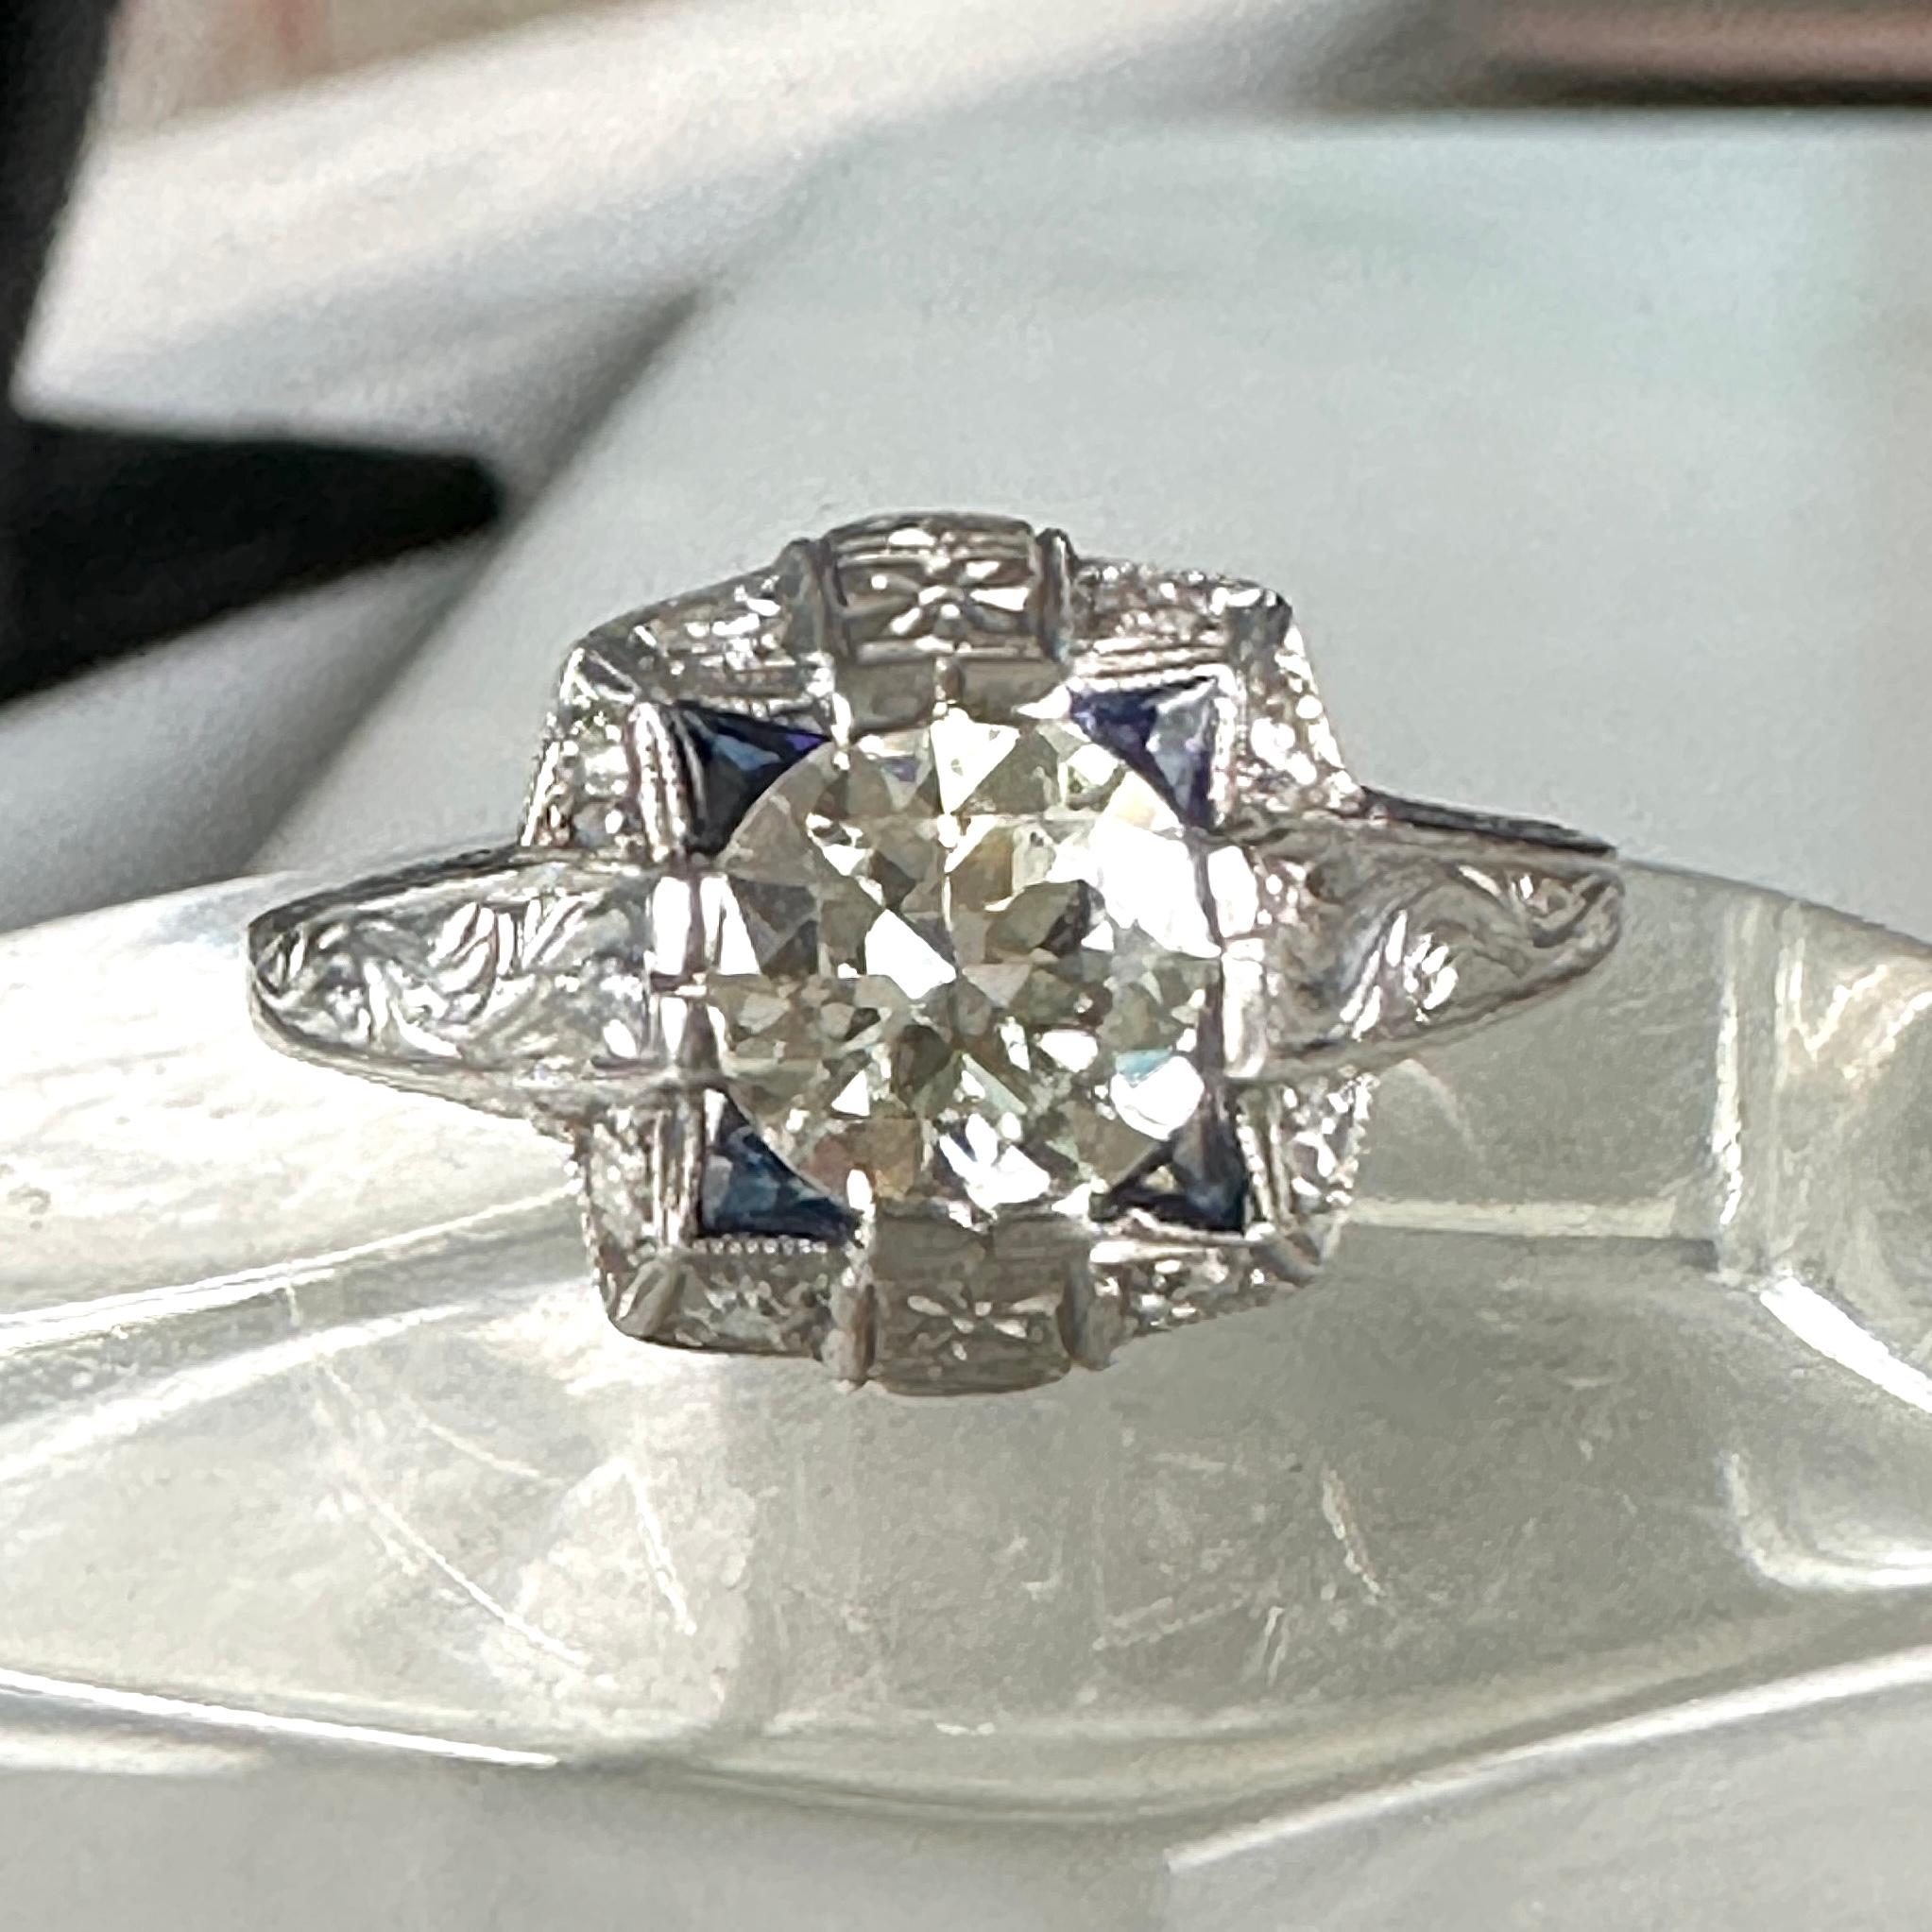 Einzelheiten:
Atemberaubende antike Art Deco  Verlobungsring mit Diamanten und synthetischen Saphiren. Das Band ist aus Platin. Dies ist ein wunderschöner Ring mit schönen Gravur um die Schultern des Bandes, und hat Gravur Details rund um den